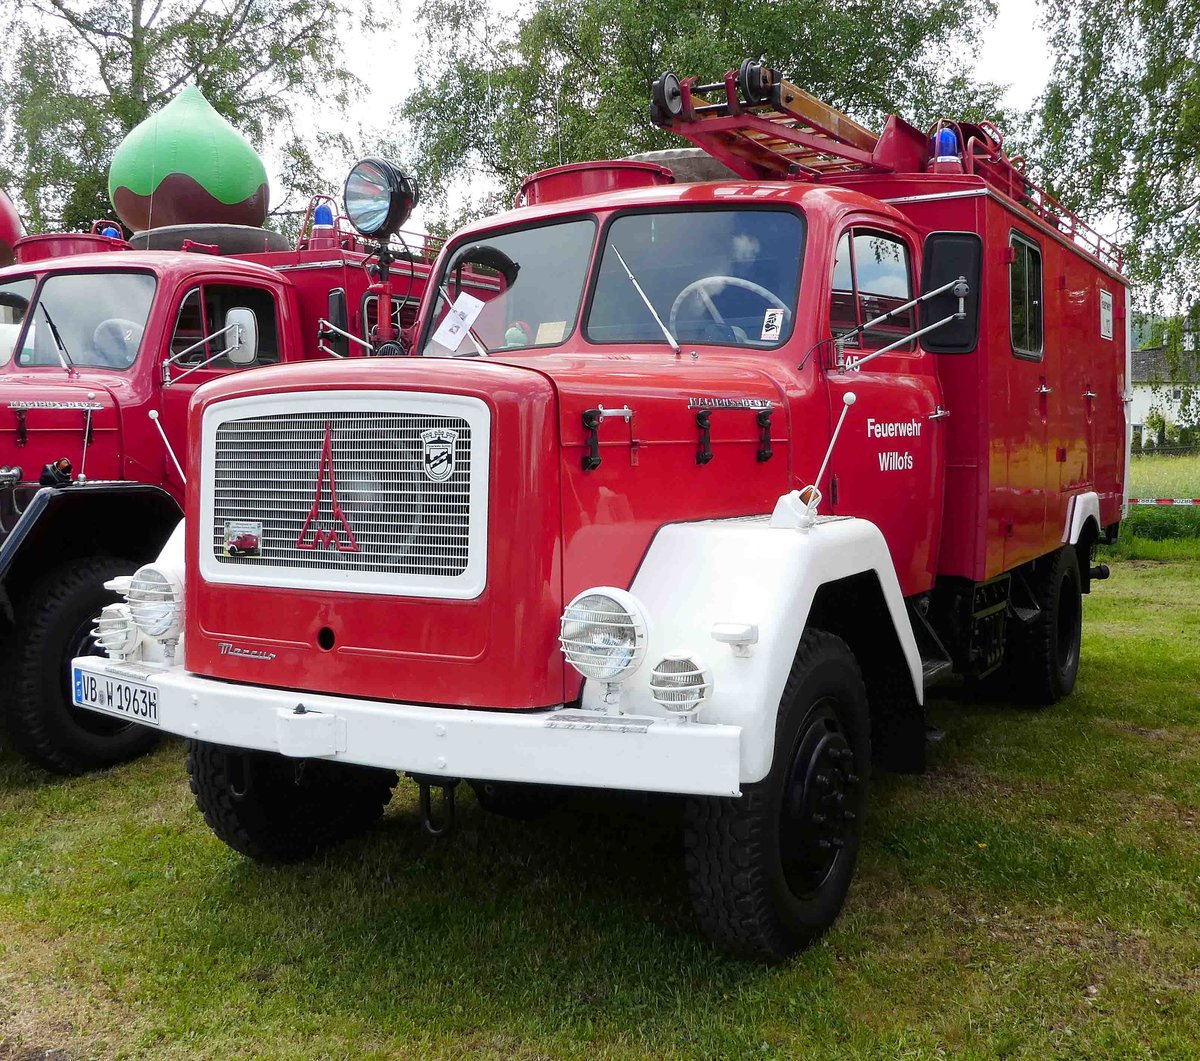 =Magirus Mercur als Löschgruppenfahrzeug LF 16 der Feuerwehr Willofs, steht im Mai 2017 in der Burgenstadt Schlitz